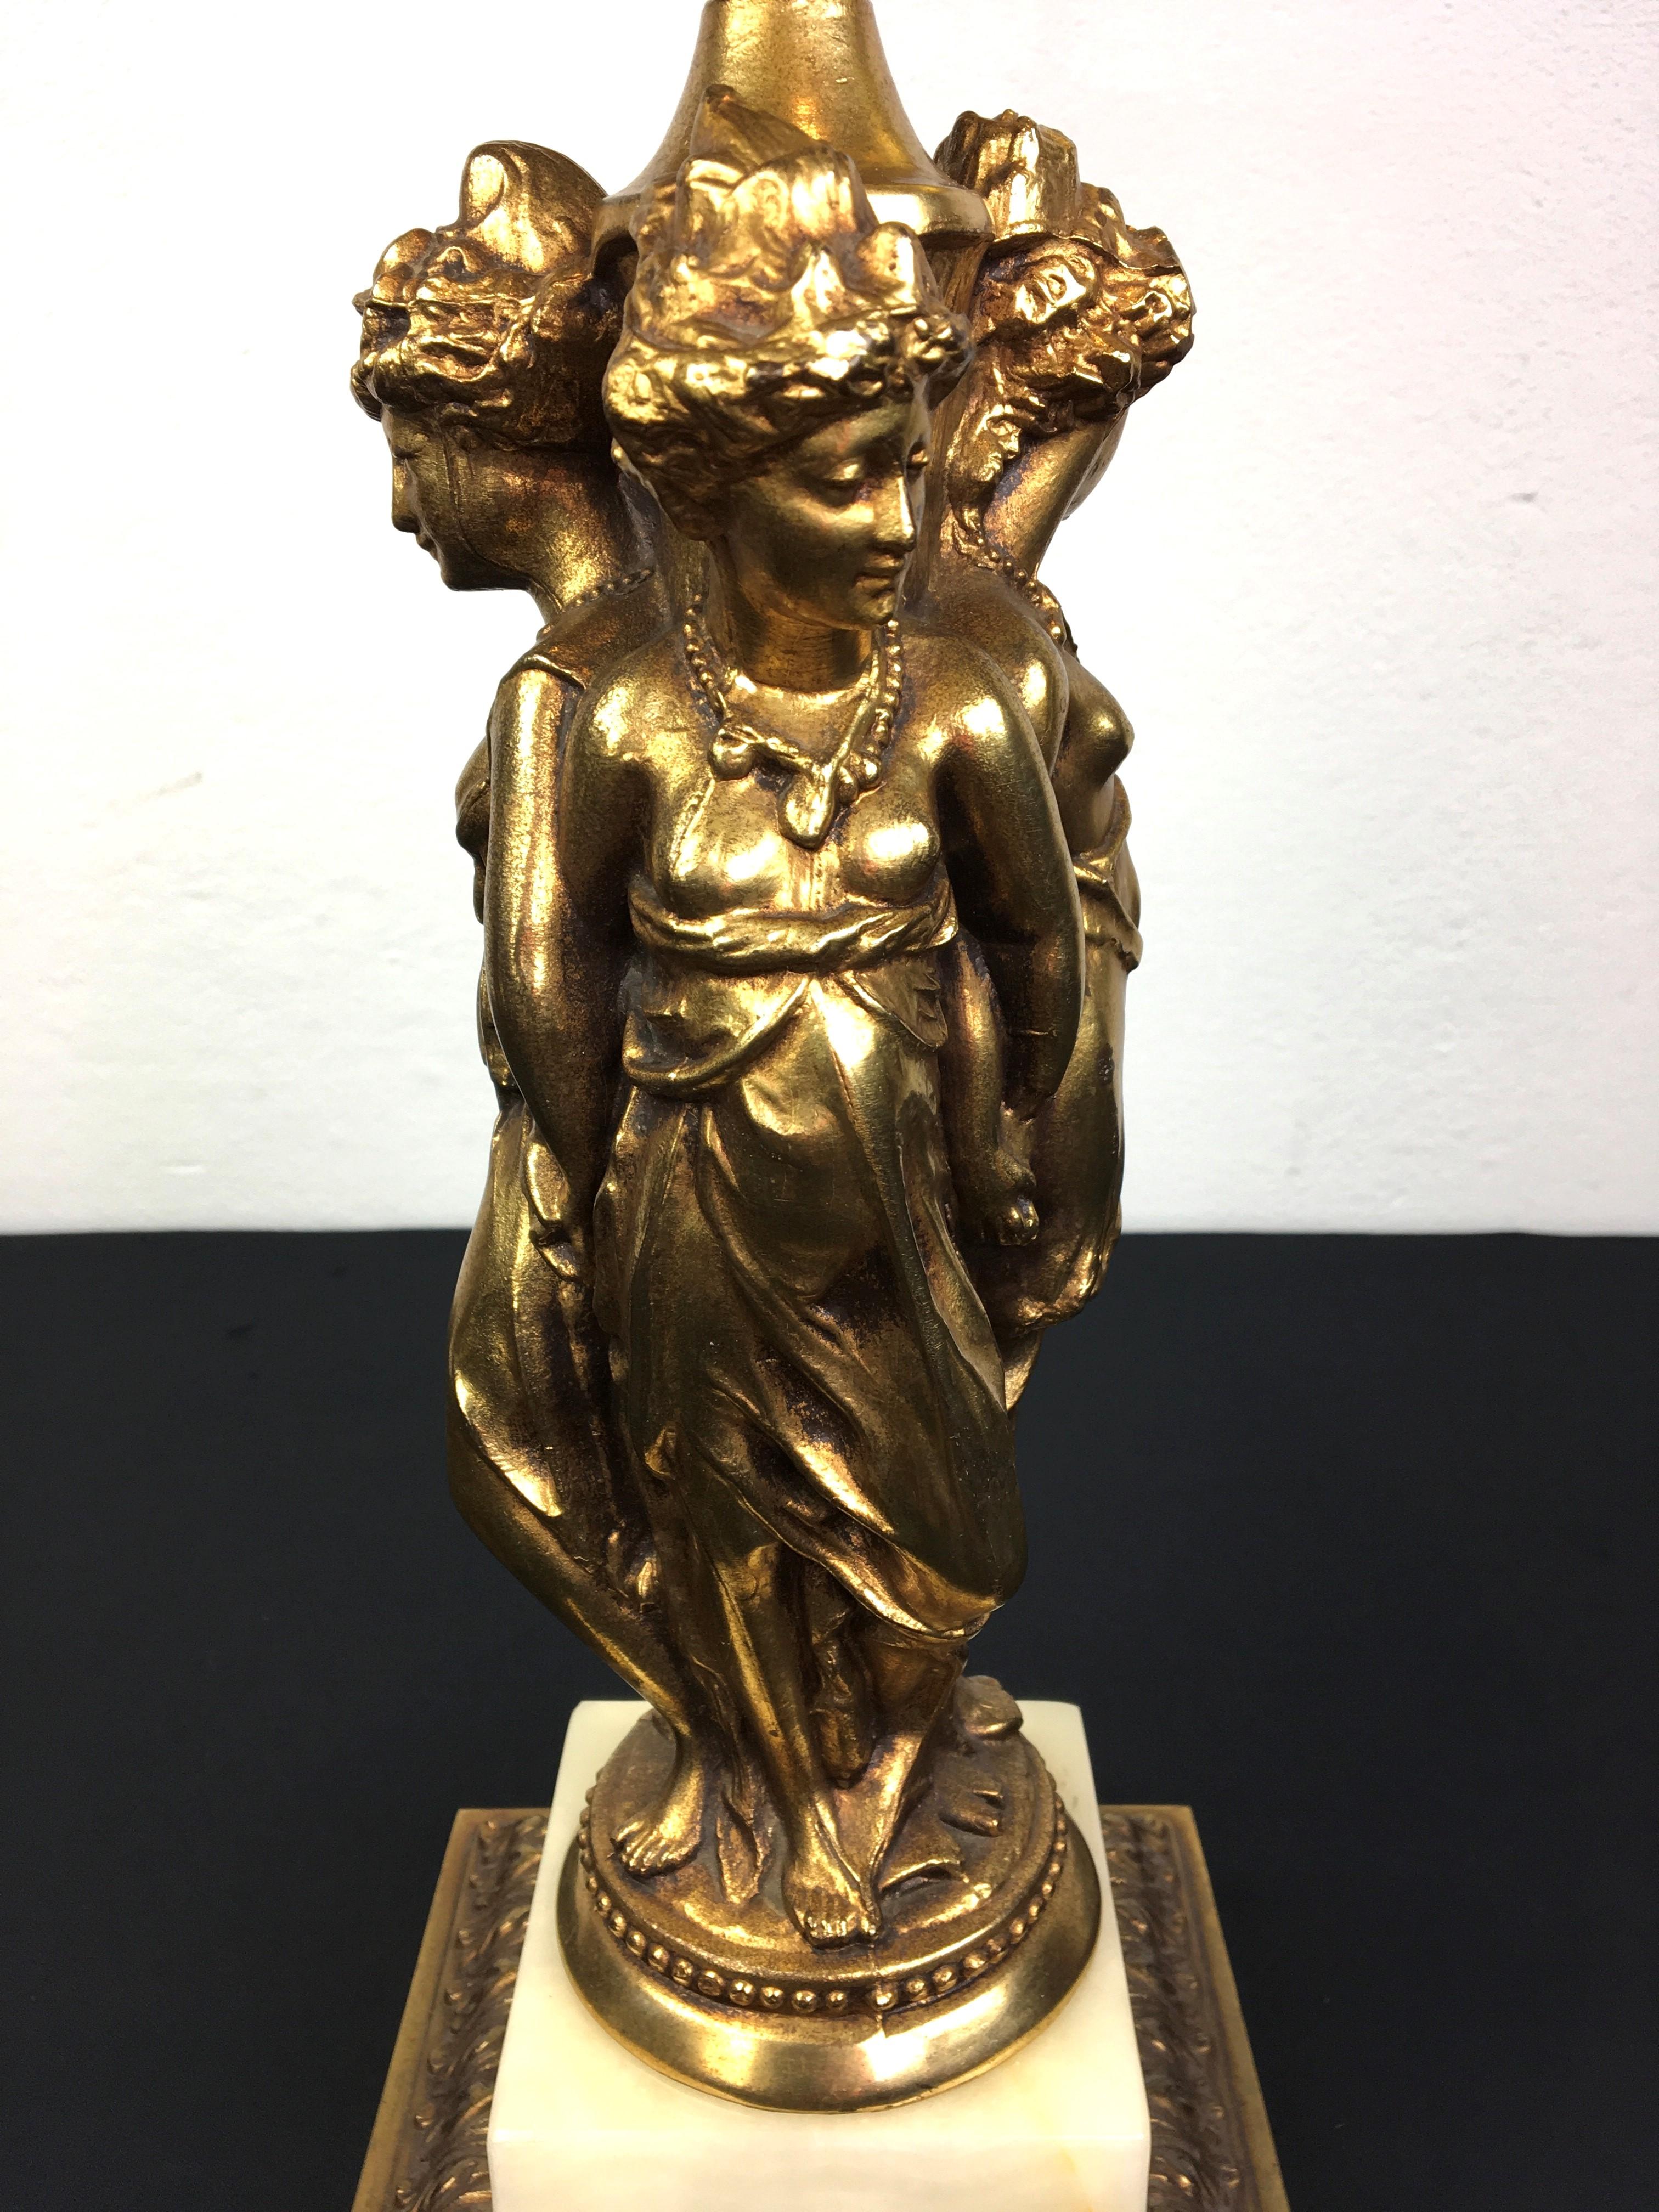 Hollywood Regency Deknudt Tischlampe mit einem eleganten Trio von Göttinnen oder Damen. Diese ikonische Göttin-Lampe ist ein Beispiel für großartiges, monumentales Design aus den 70er Jahren. Hergestellt vom belgischen Unternehmen für hochwertige